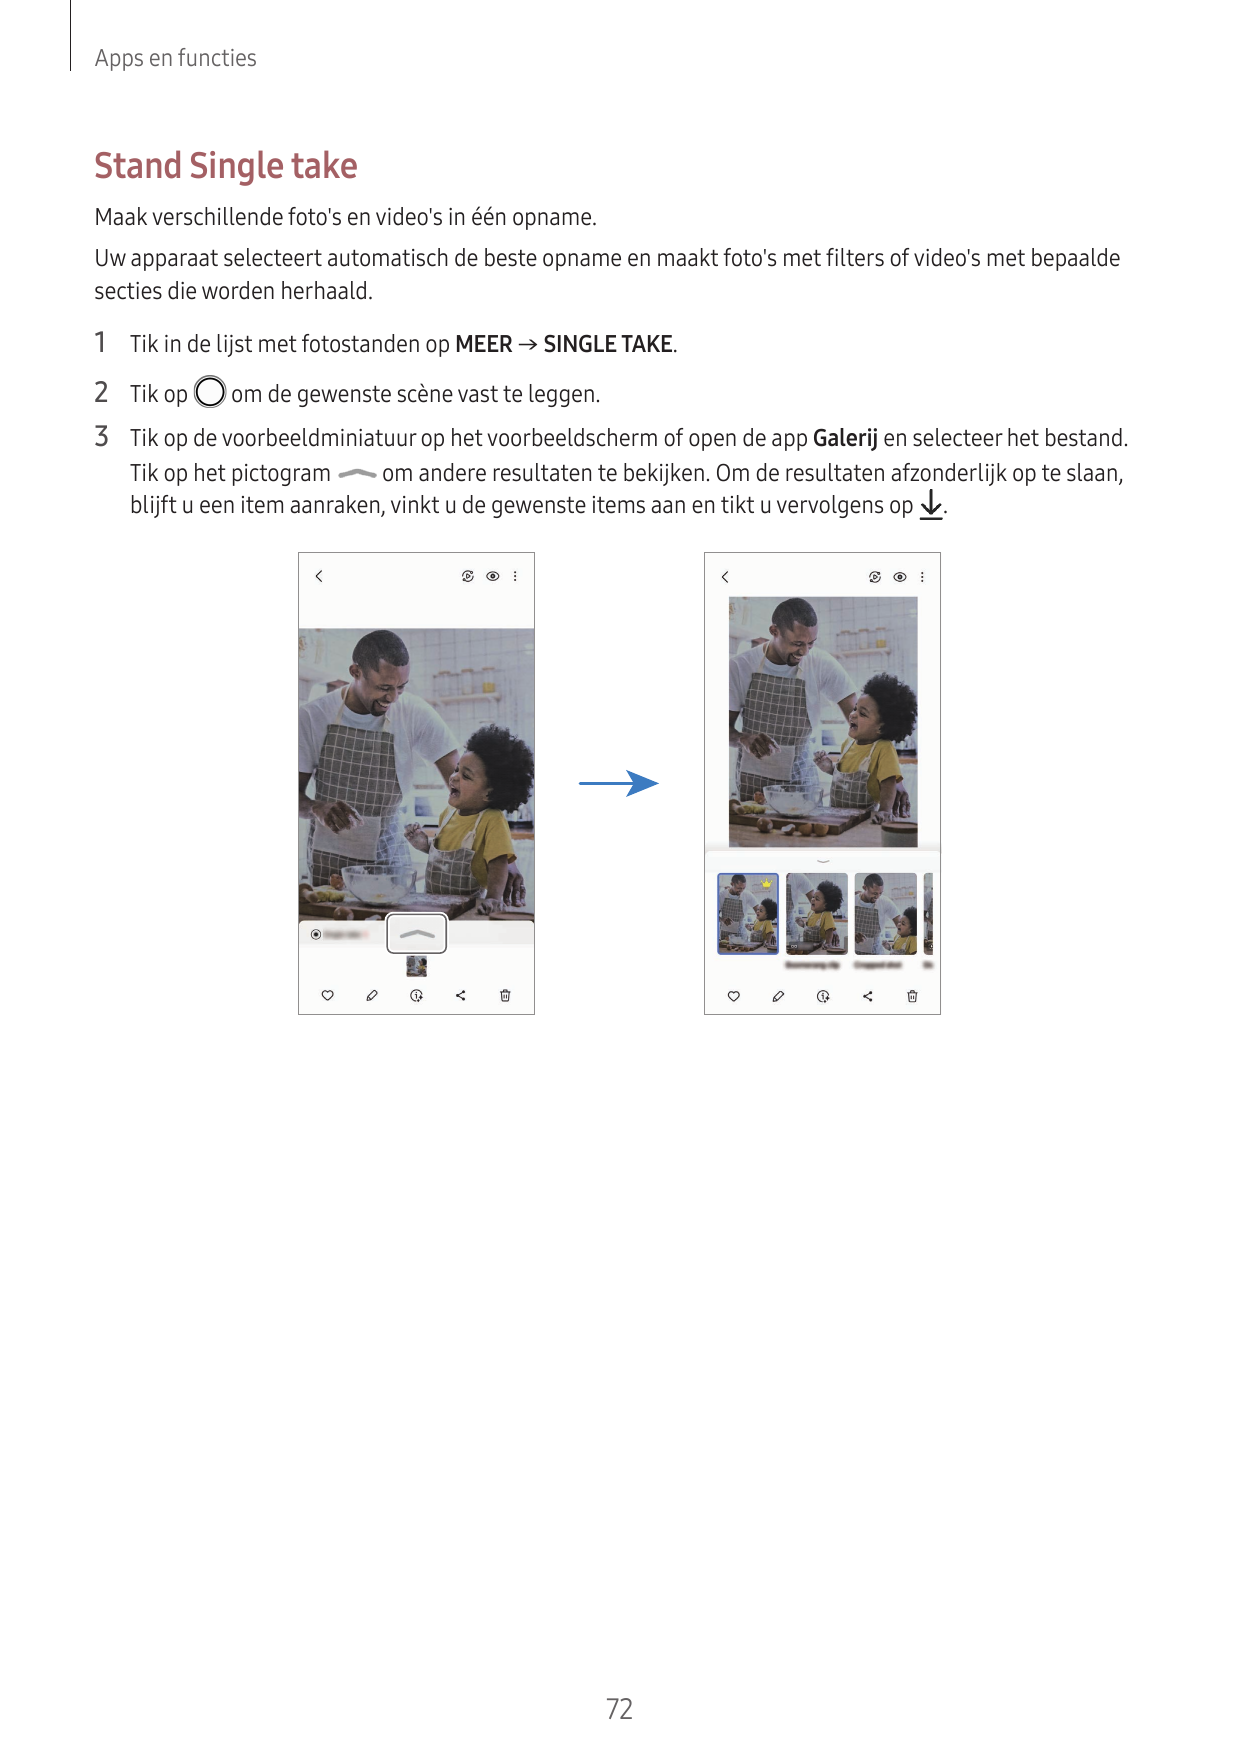 Apps en functiesStand Single takeMaak verschillende foto's en video's in één opname.Uw apparaat selecteert automatisch de beste 